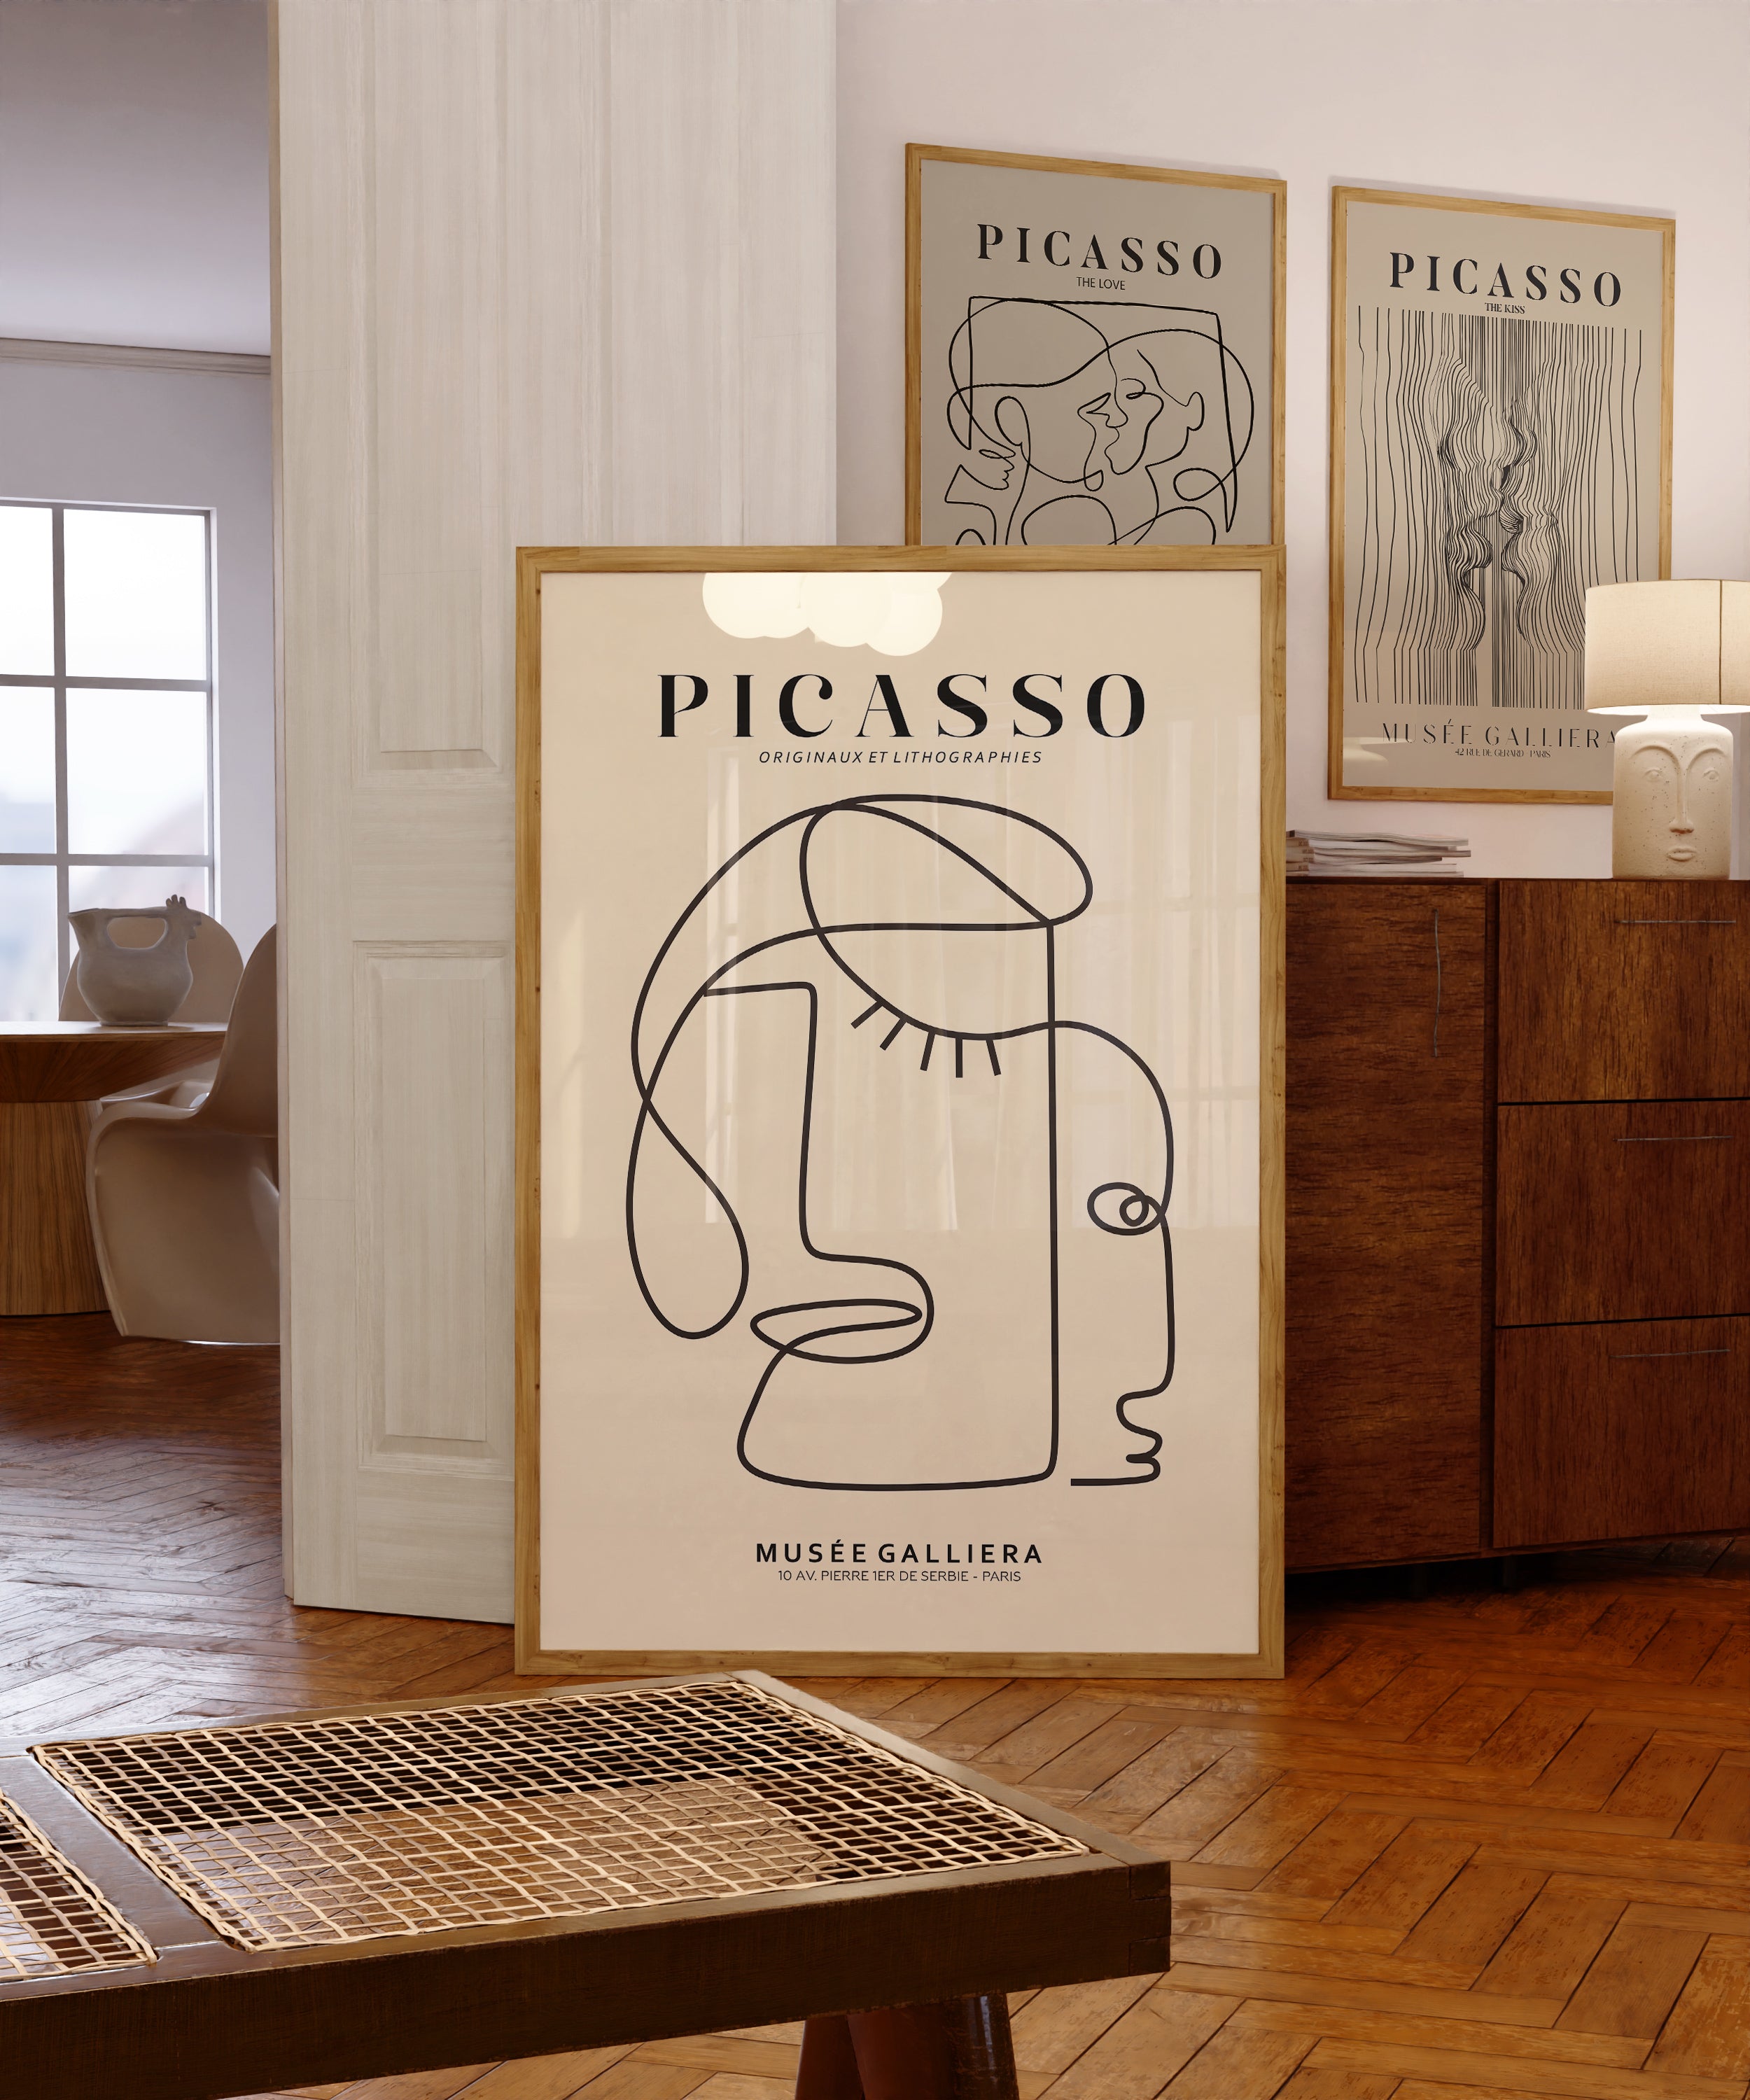 Picasso - Originaux Et Lithographies